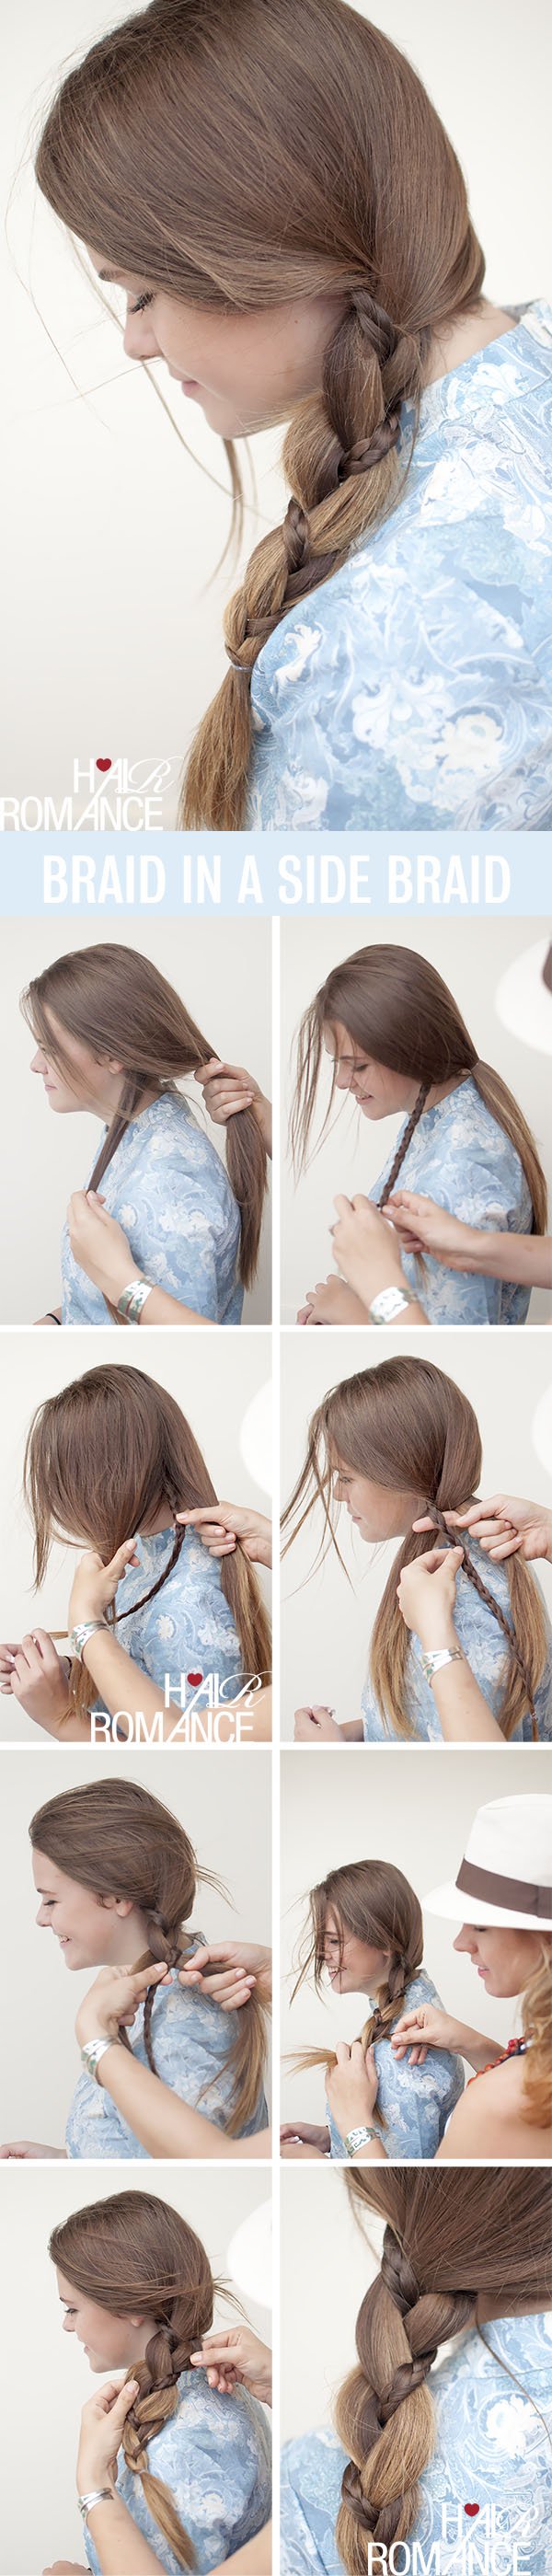 Hair-Romance-hairstyle-tutorial-braid-in-a-side-braid